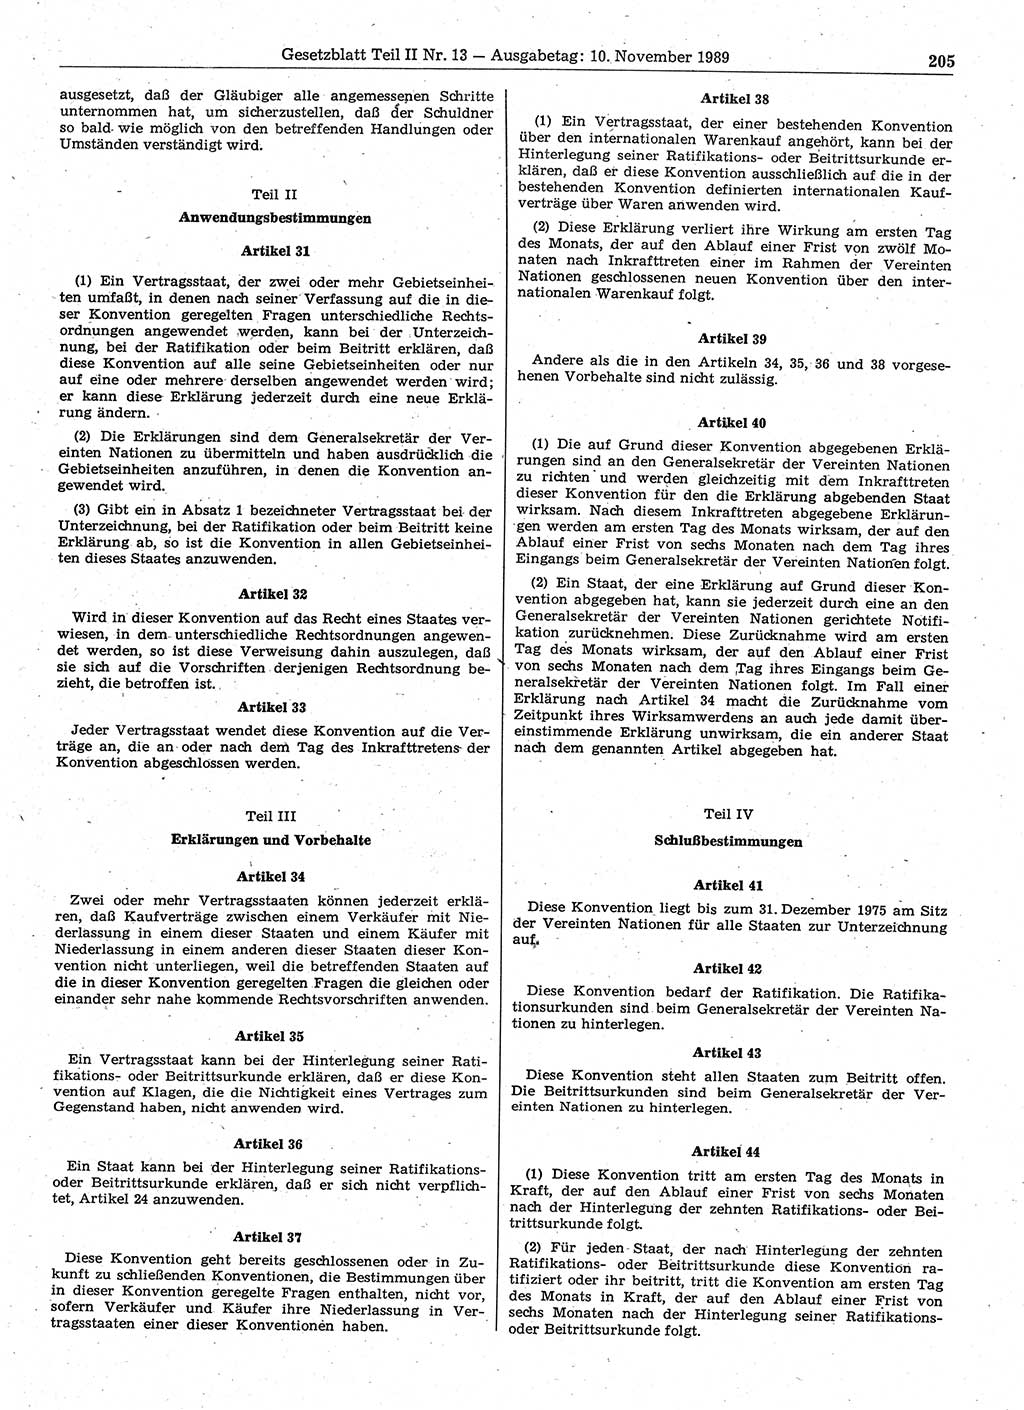 Gesetzblatt (GBl.) der Deutschen Demokratischen Republik (DDR) Teil ⅠⅠ 1989, Seite 205 (GBl. DDR ⅠⅠ 1989, S. 205)